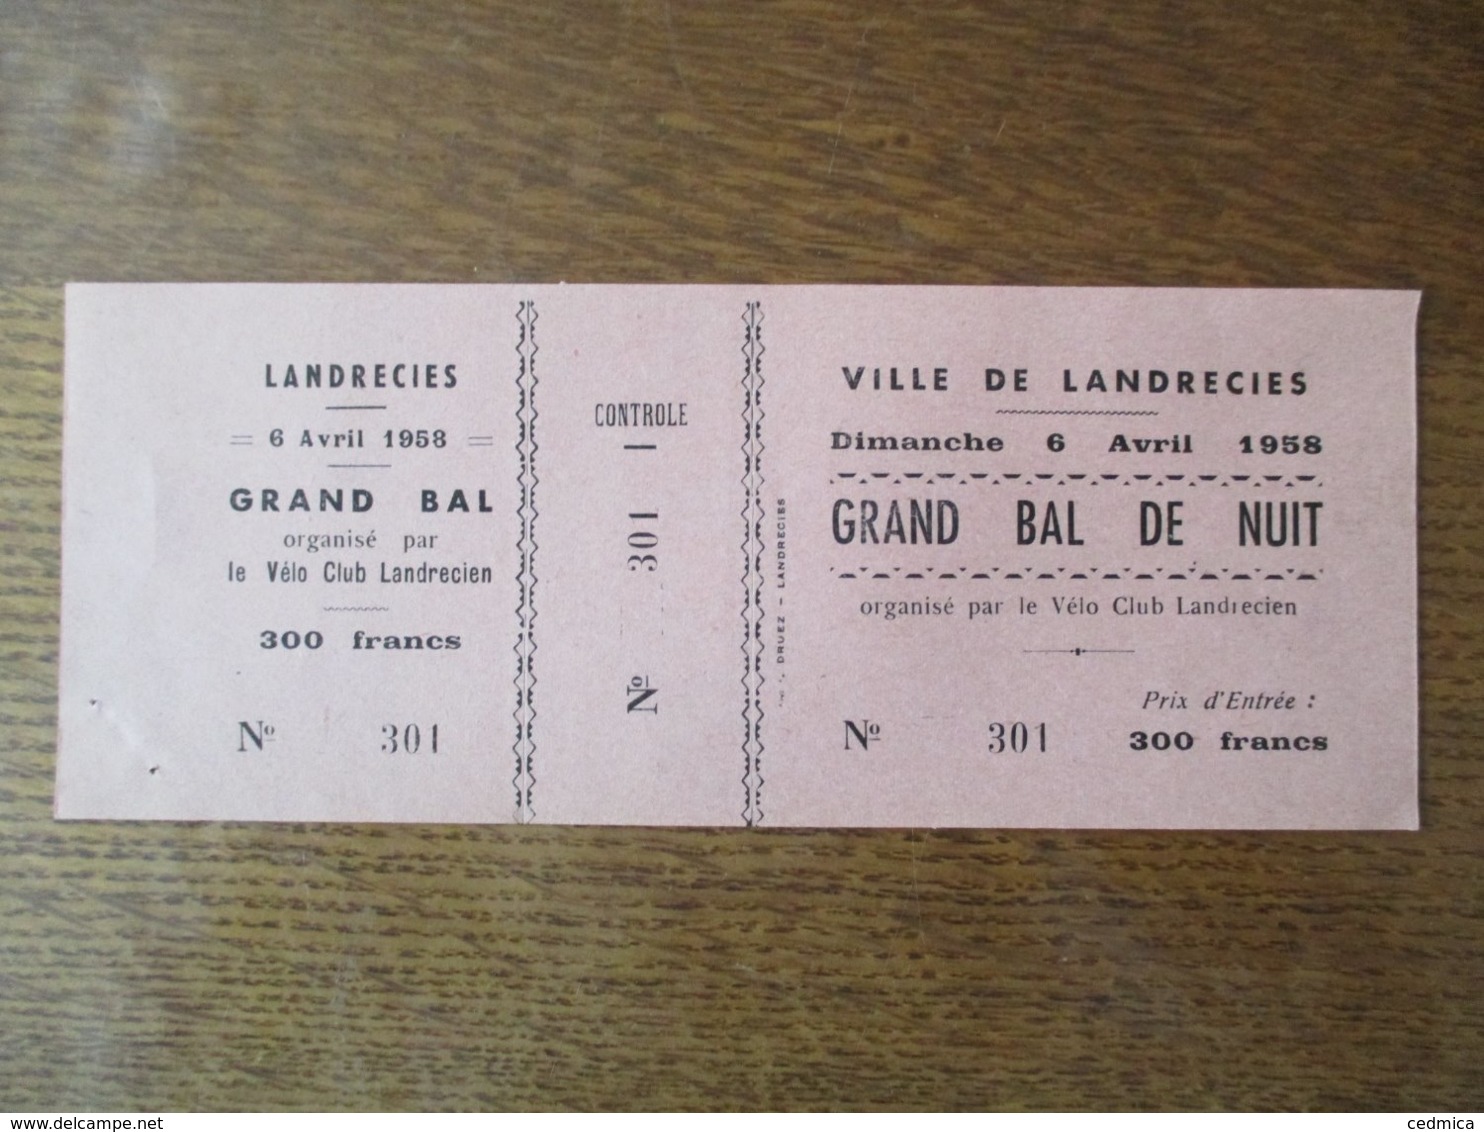 VILLE DE LANDRECIES 6 AVRIL 1958 GRAND BAL DE NUIT ORGANISE PAR LE VELO CLUB LANDRECIEN - Tickets D'entrée